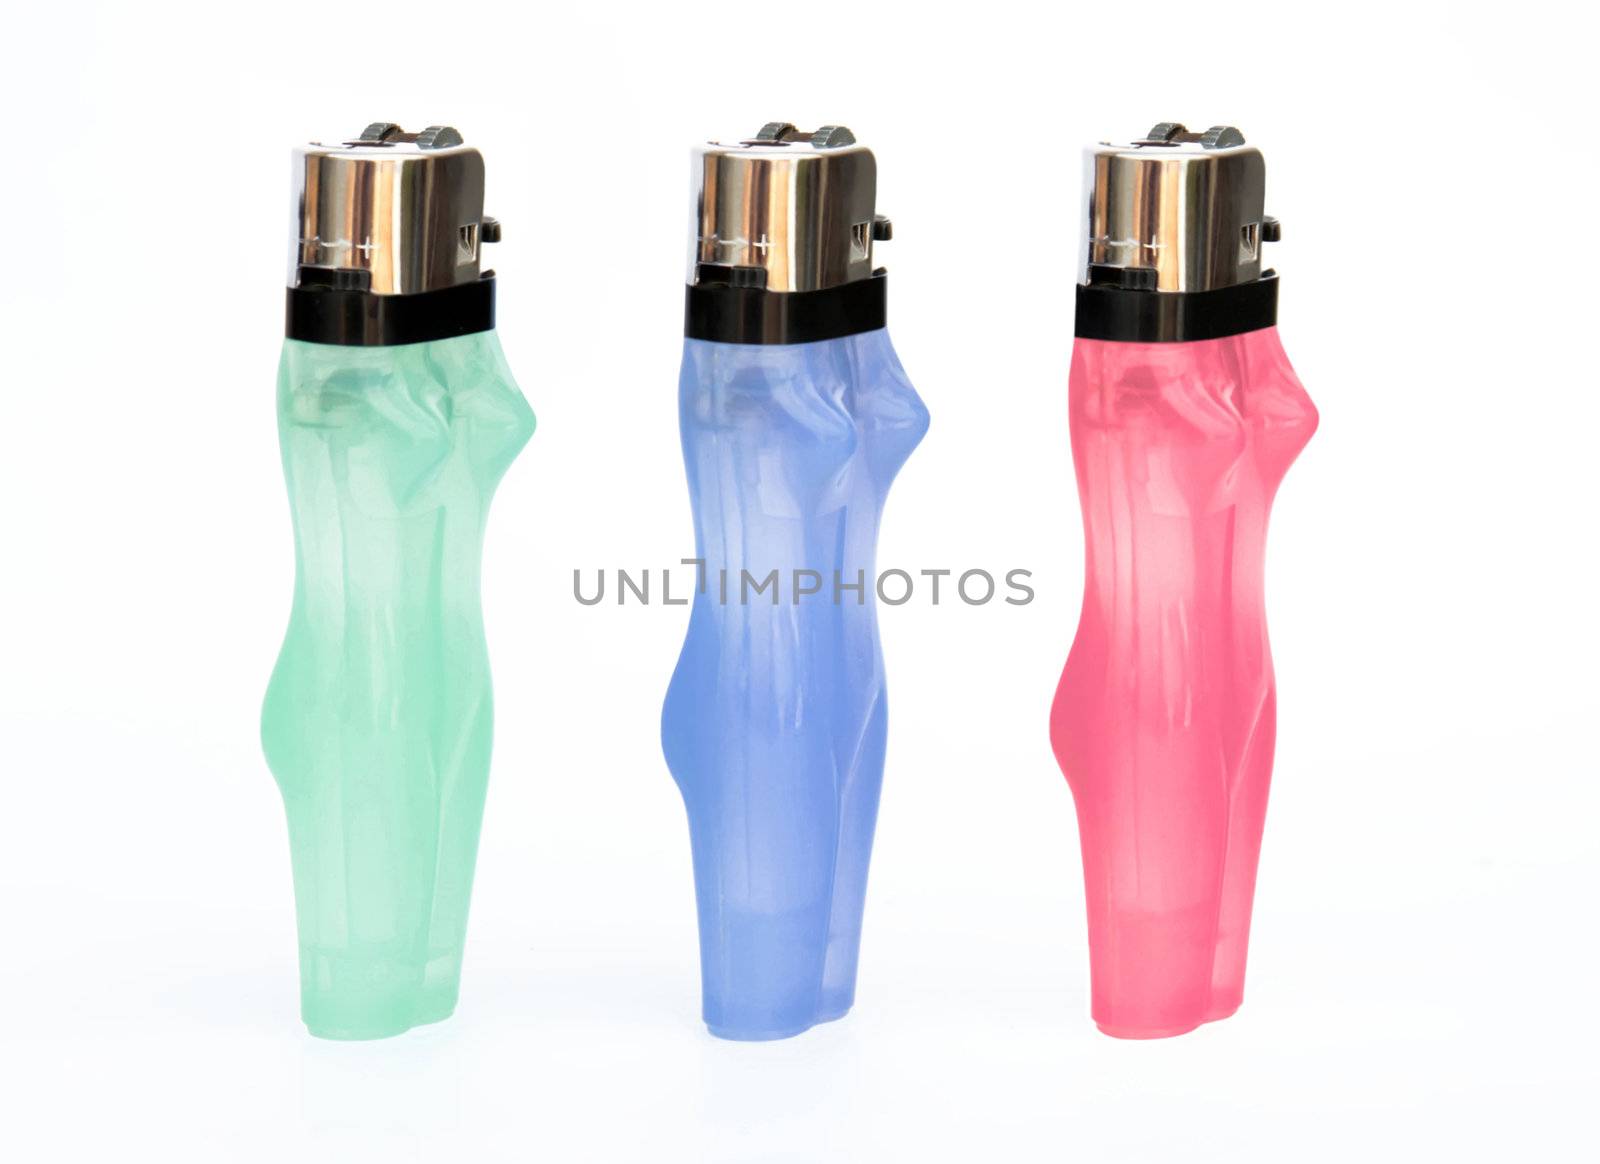 This image shows 3 feminine cigarette lighter